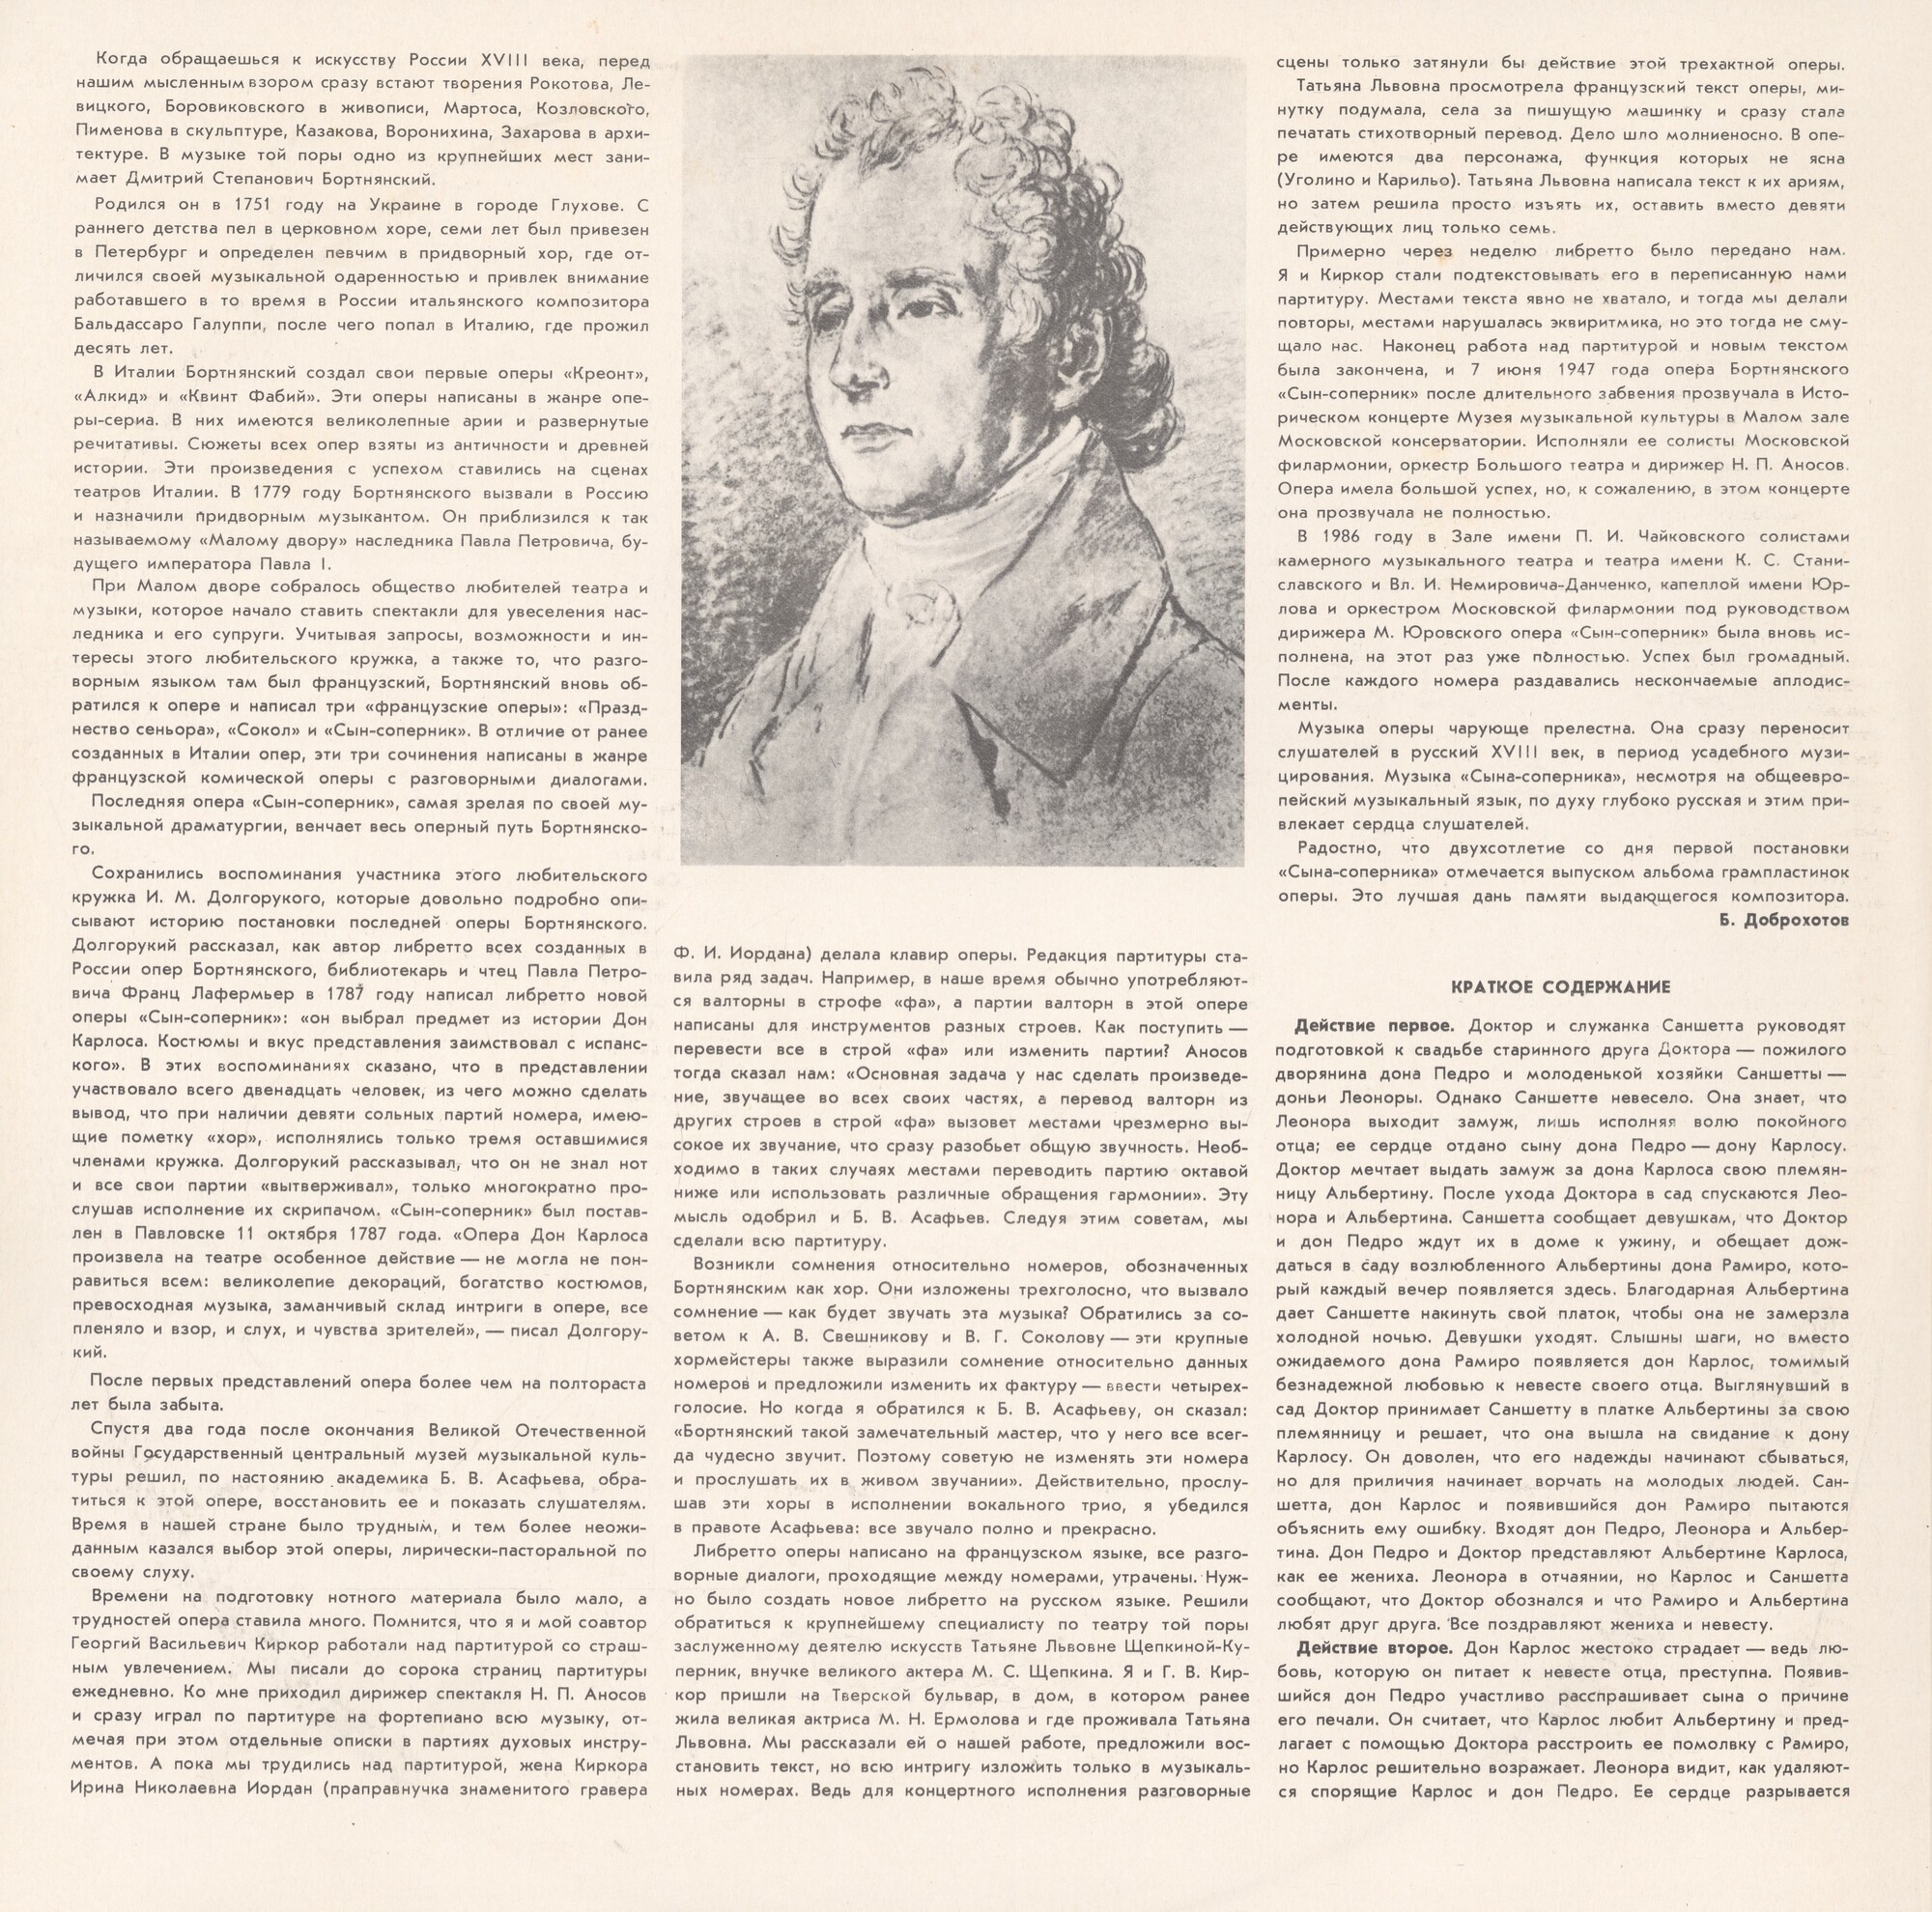 Д. БОРТНЯНСКИЙ (1751 - 1825): «Сын-соперник», опера в трех действиях (редакция Б. Доброхотова и Г. Киркора).